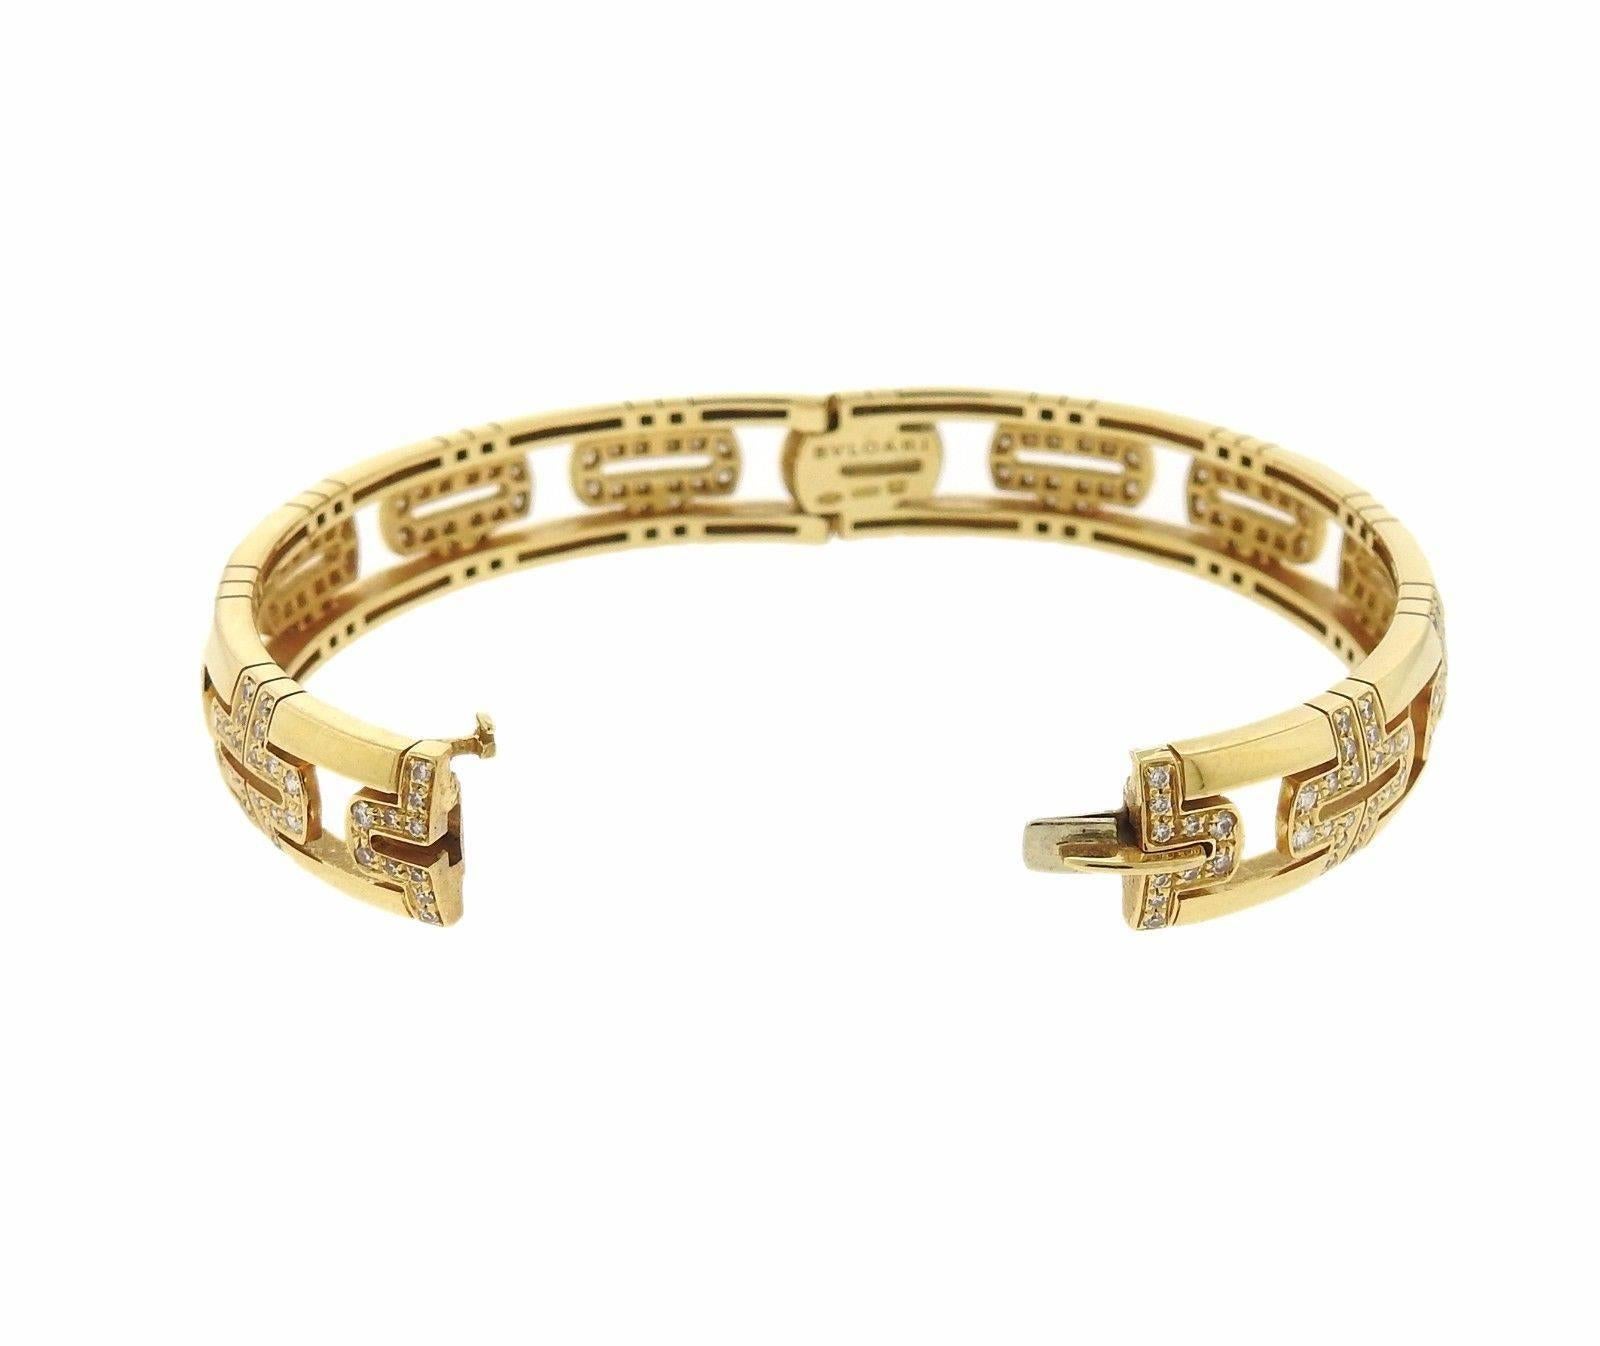 An 18K gold bracelet set with approximately 1.99 ctw of F-G/VVS-VS diamonds.  The bracelet will comfortably fit 6.75